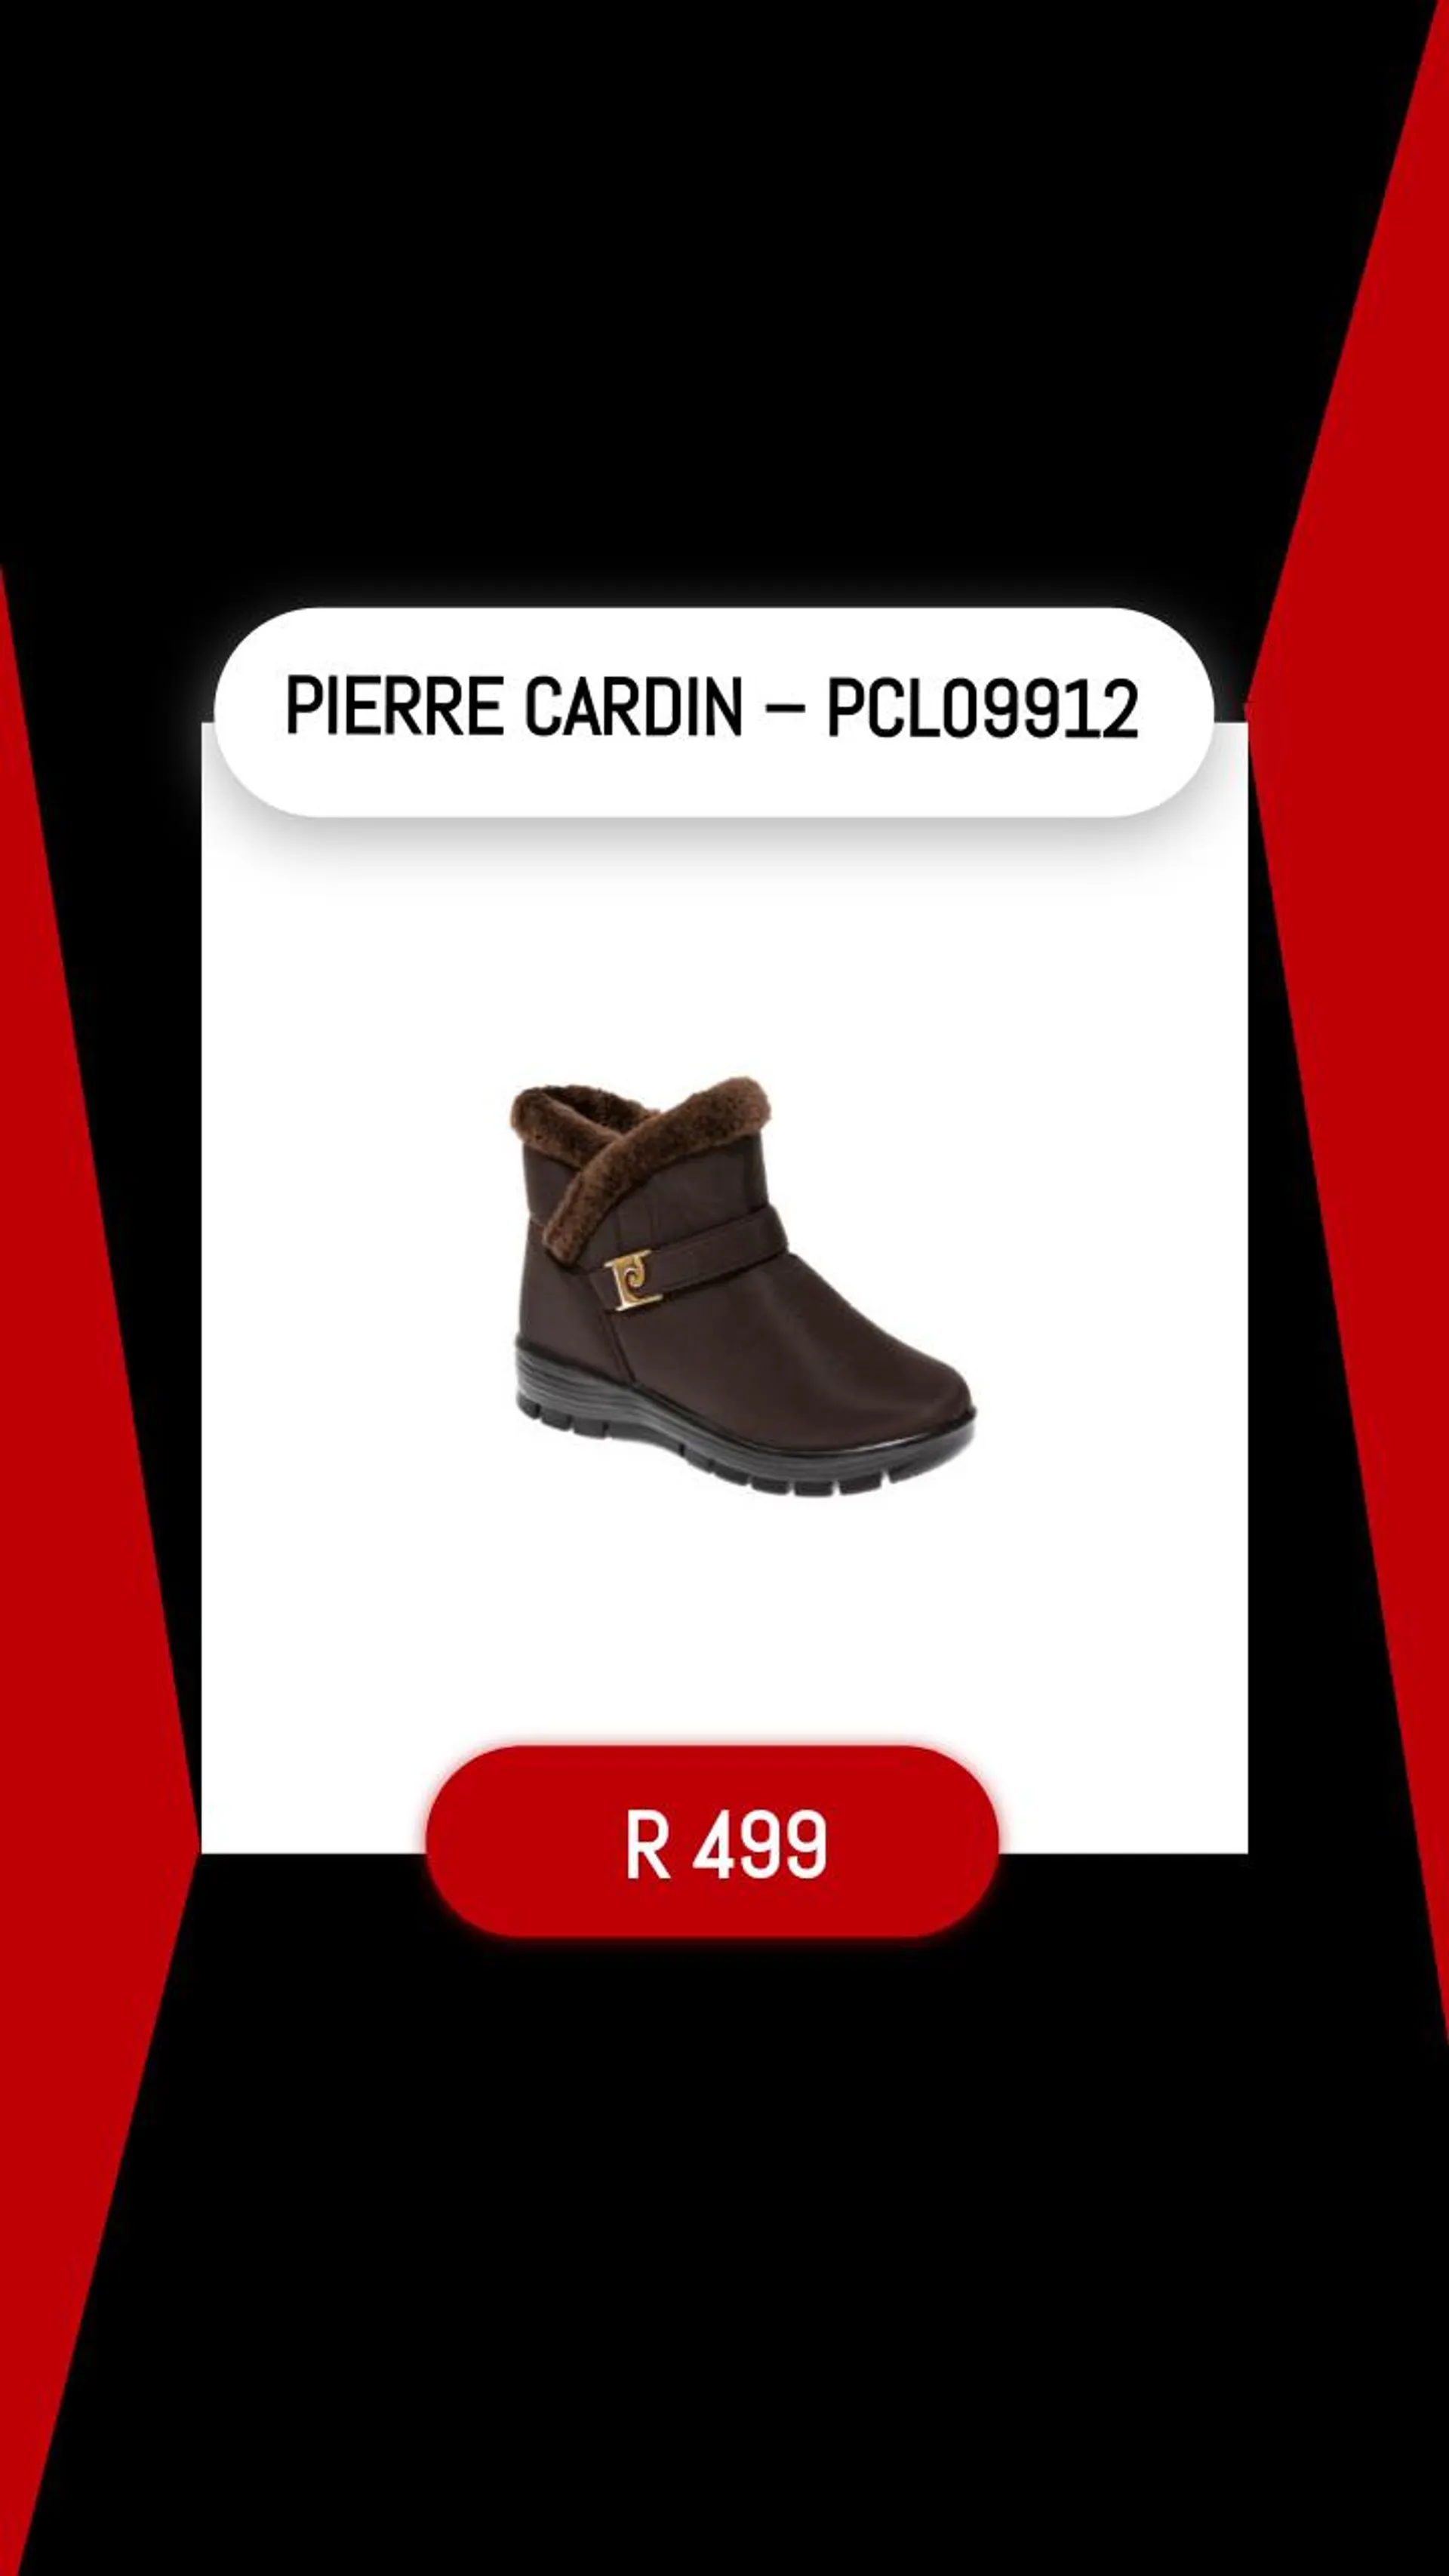 PIERRE CARDIN – PCL09912